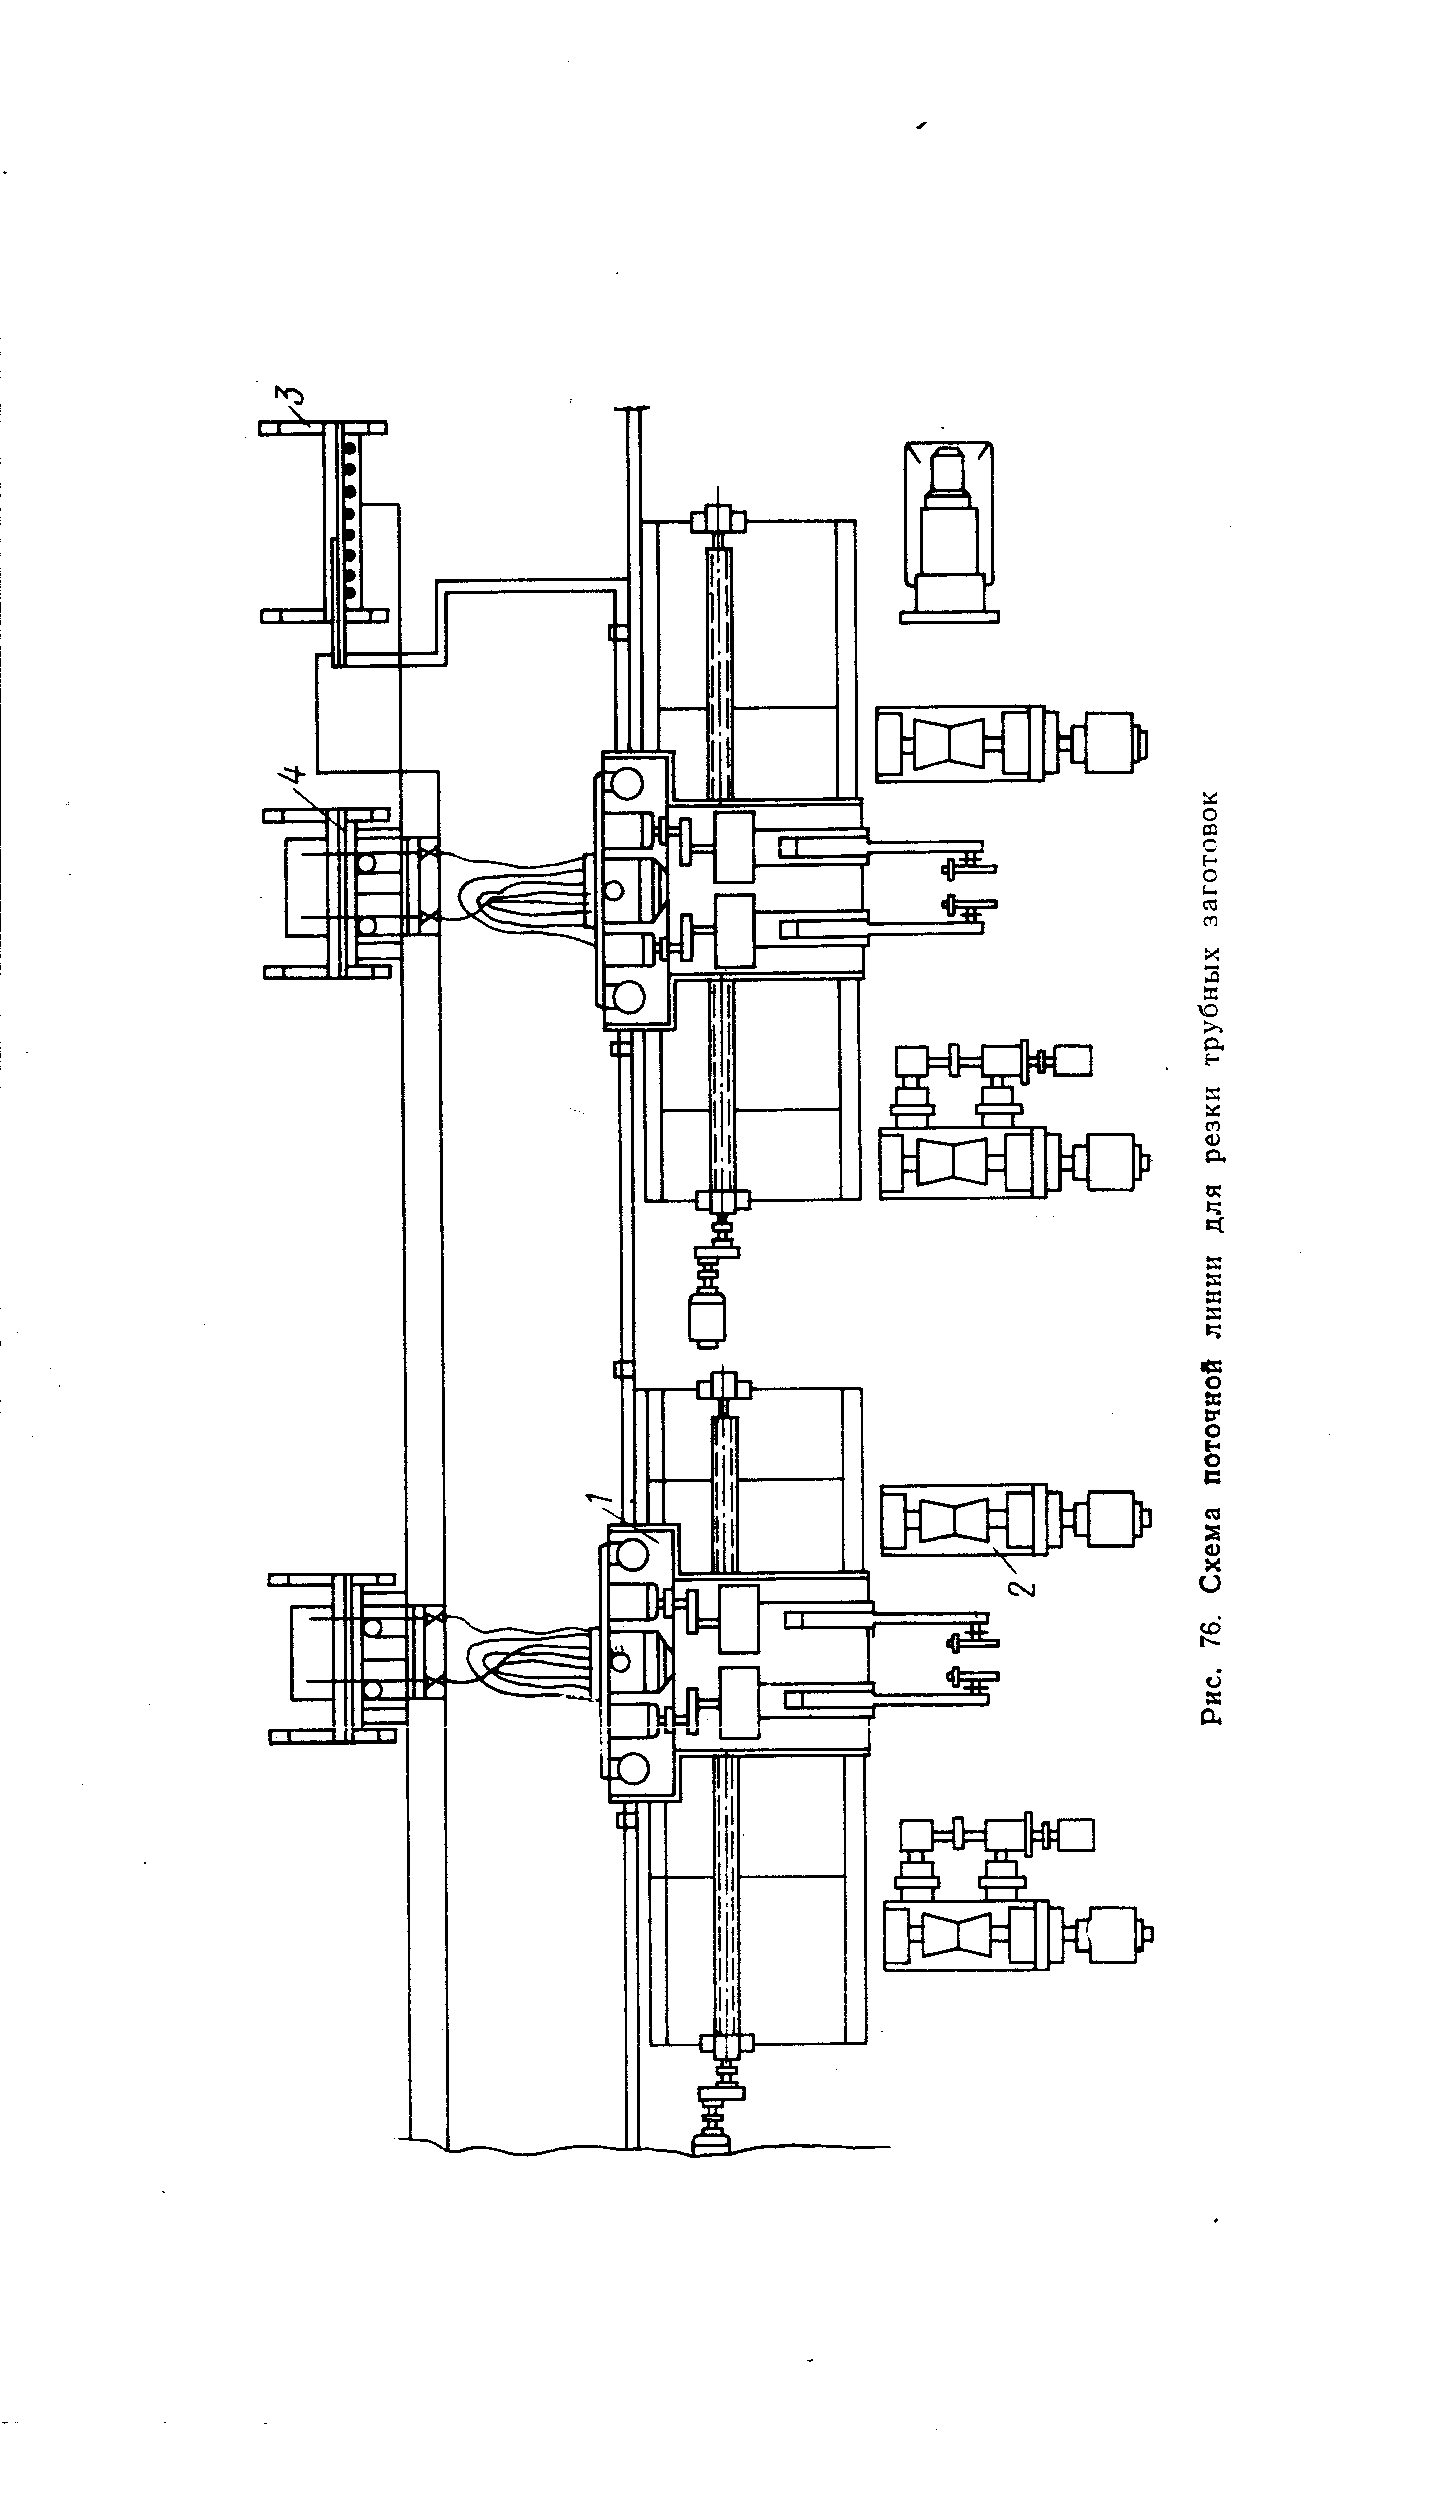 Рис. 76. Схема поточной линии для резки трубных заготовок
